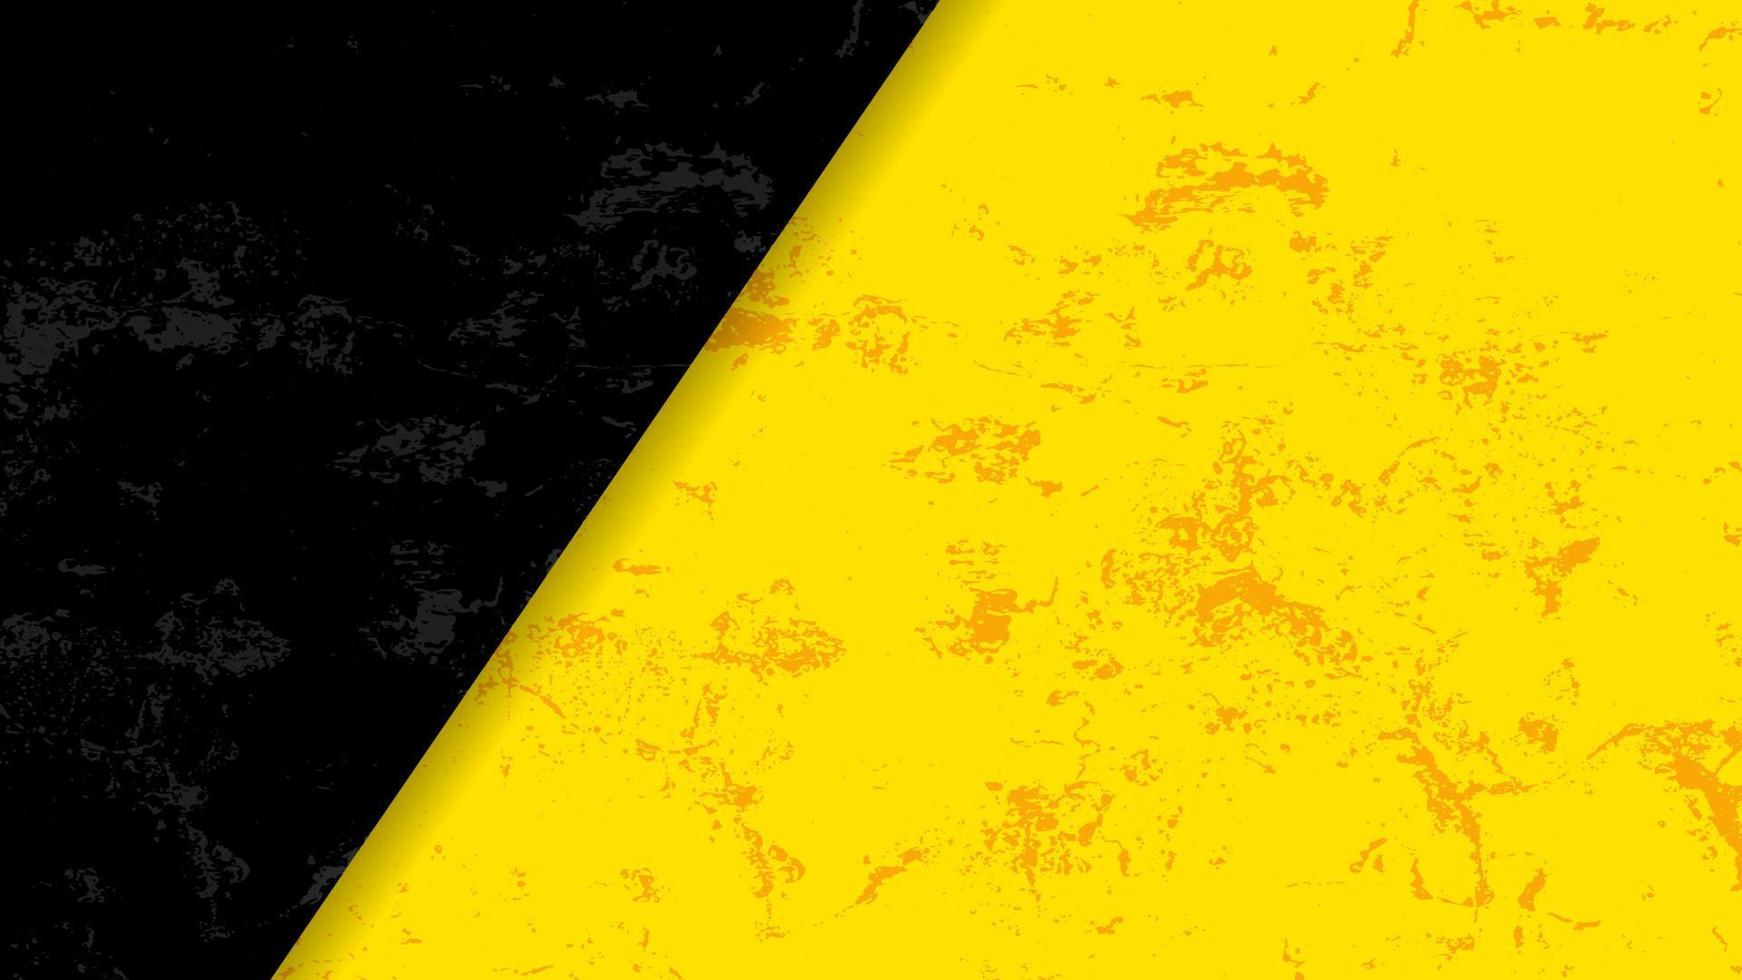 eenvoudige zwarte en gele achtergrond met grunge effect. abstracte gele en zwarte achtergrond voor spandoek, poster, flyer of behang vector